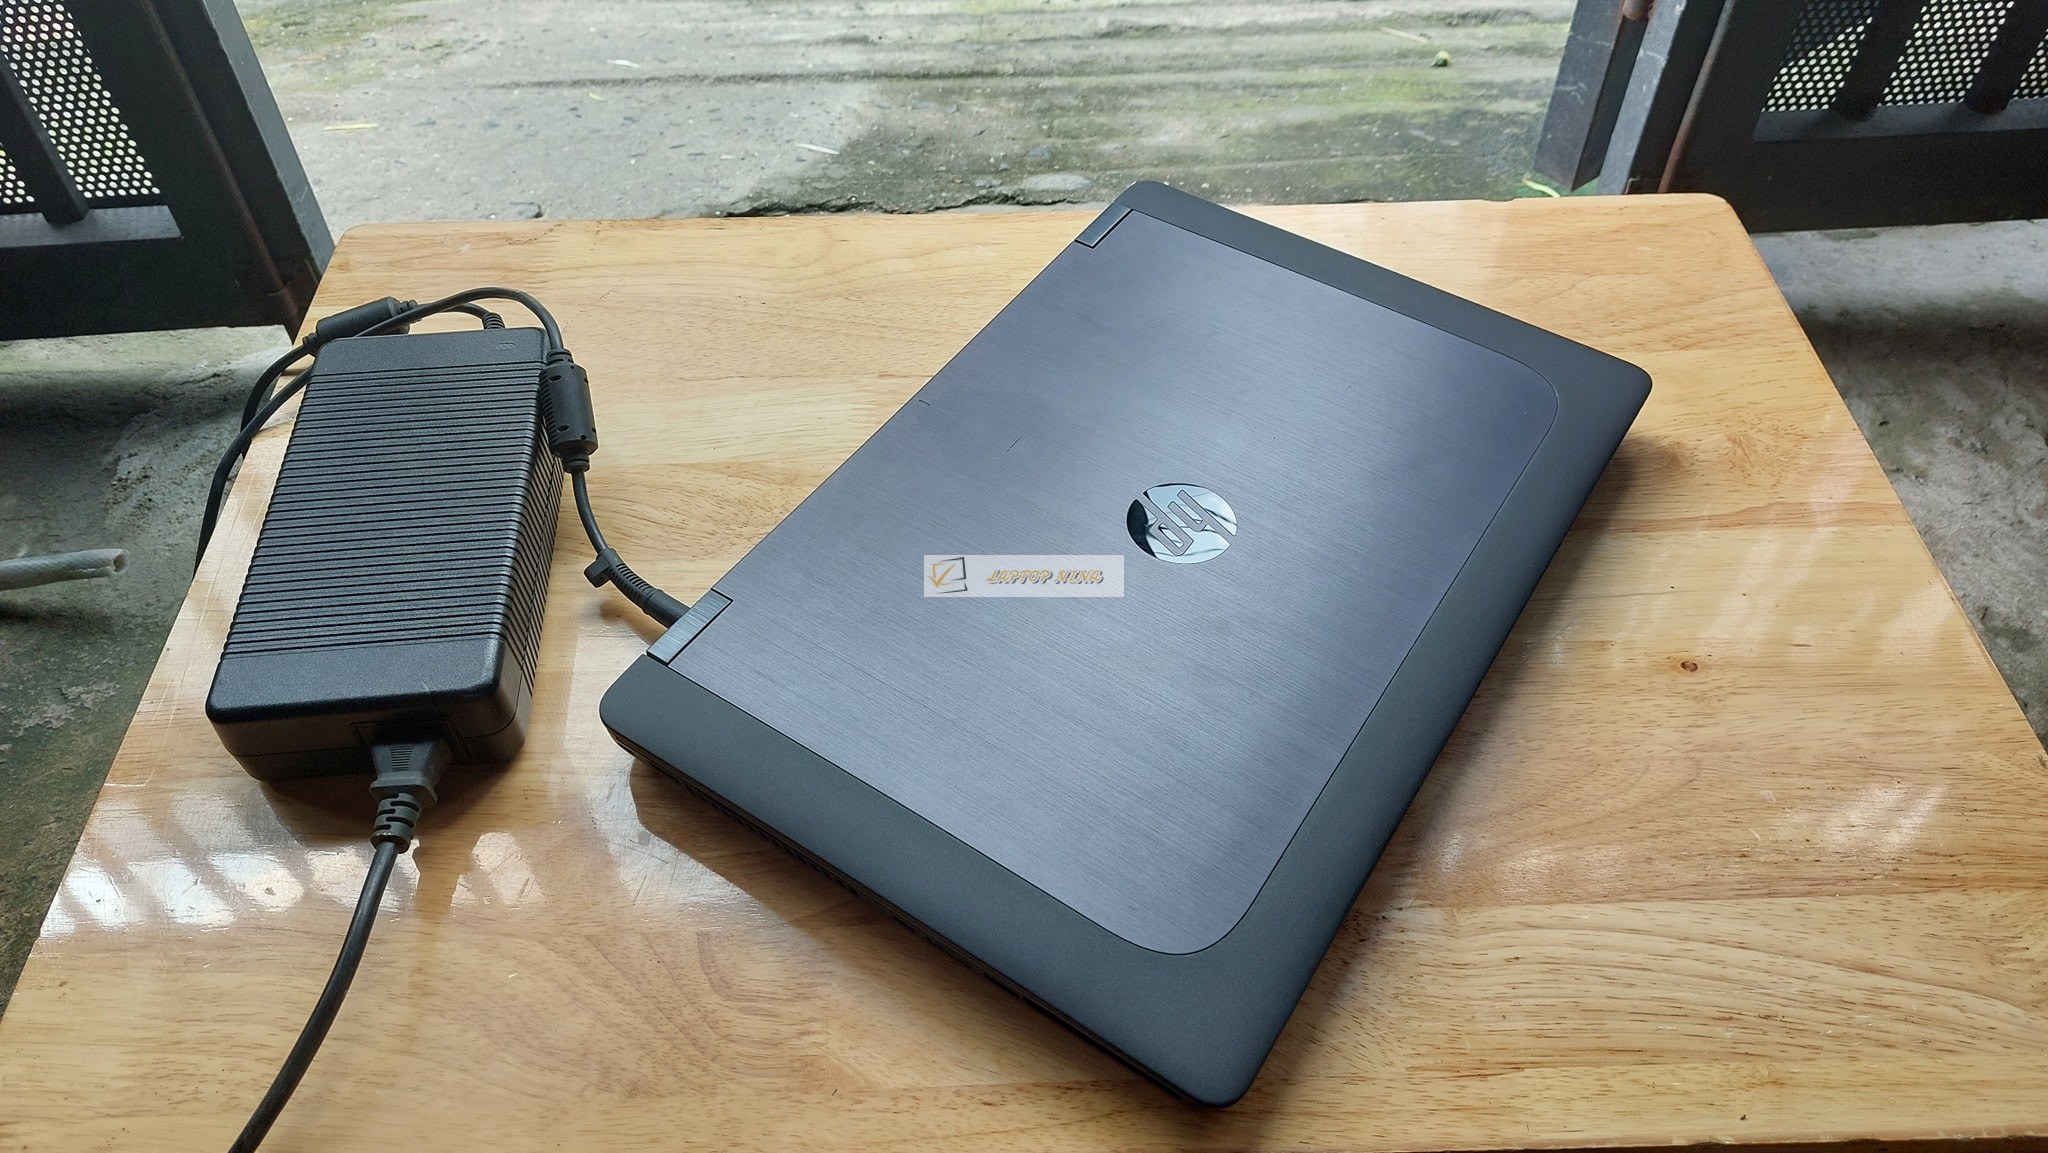 Laptop HP ZBook 15 G1 Core i7 4800QM ram 16G ssd 128gb Vga K1100 Full HD 10